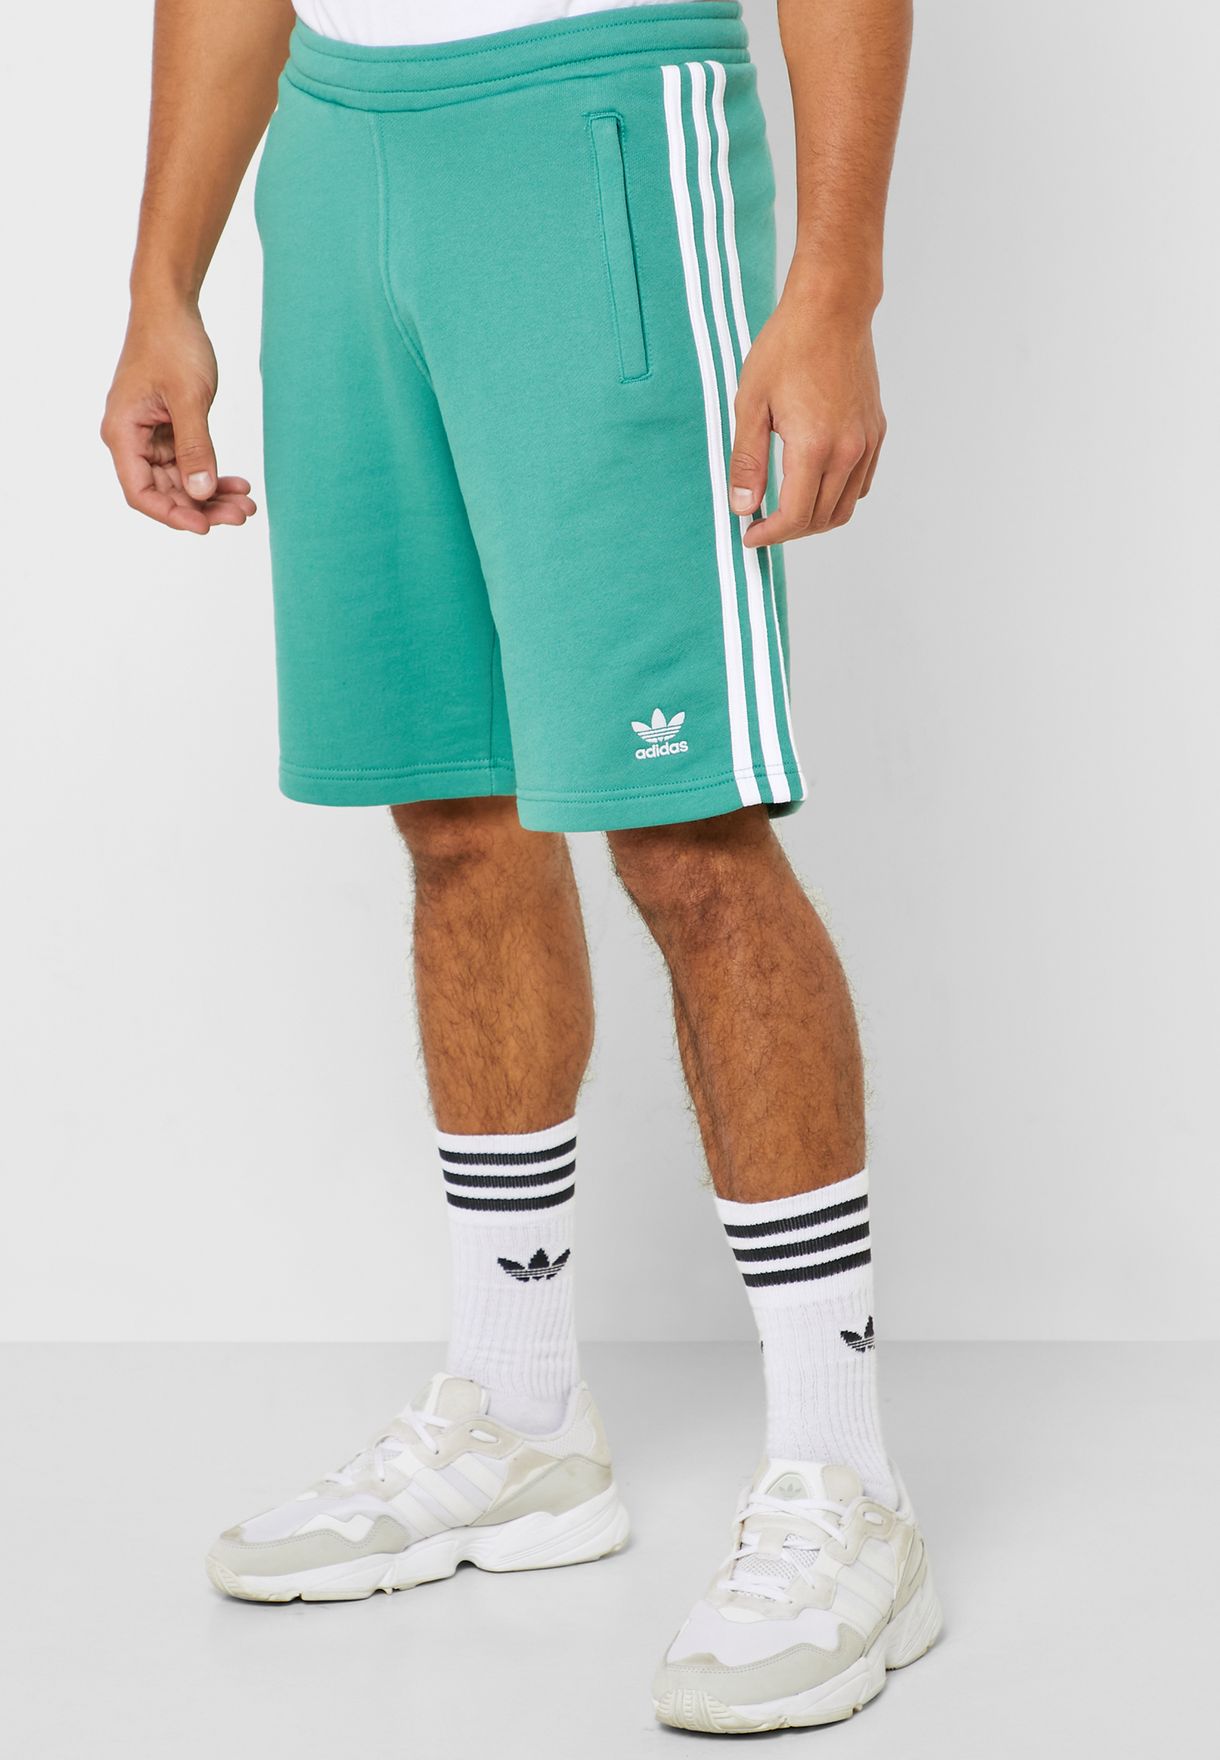 adidas originals green shorts